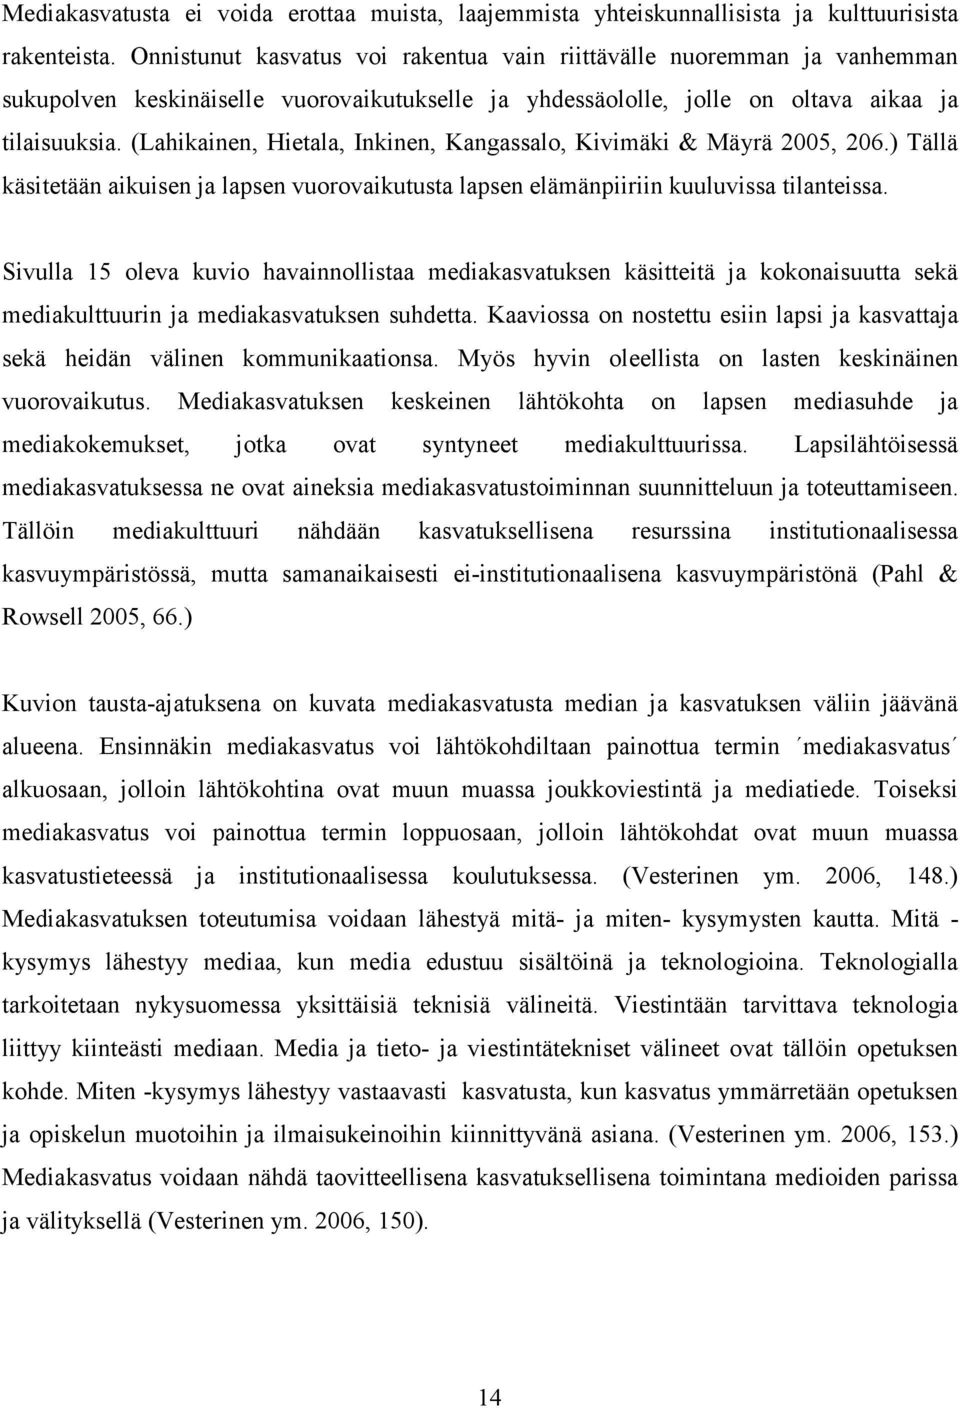 (Lahikainen, Hietala, Inkinen, Kangassalo, Kivimäki & Mäyrä 2005, 206.) Tällä käsitetään aikuisen ja lapsen vuorovaikutusta lapsen elämänpiiriin kuuluvissa tilanteissa.